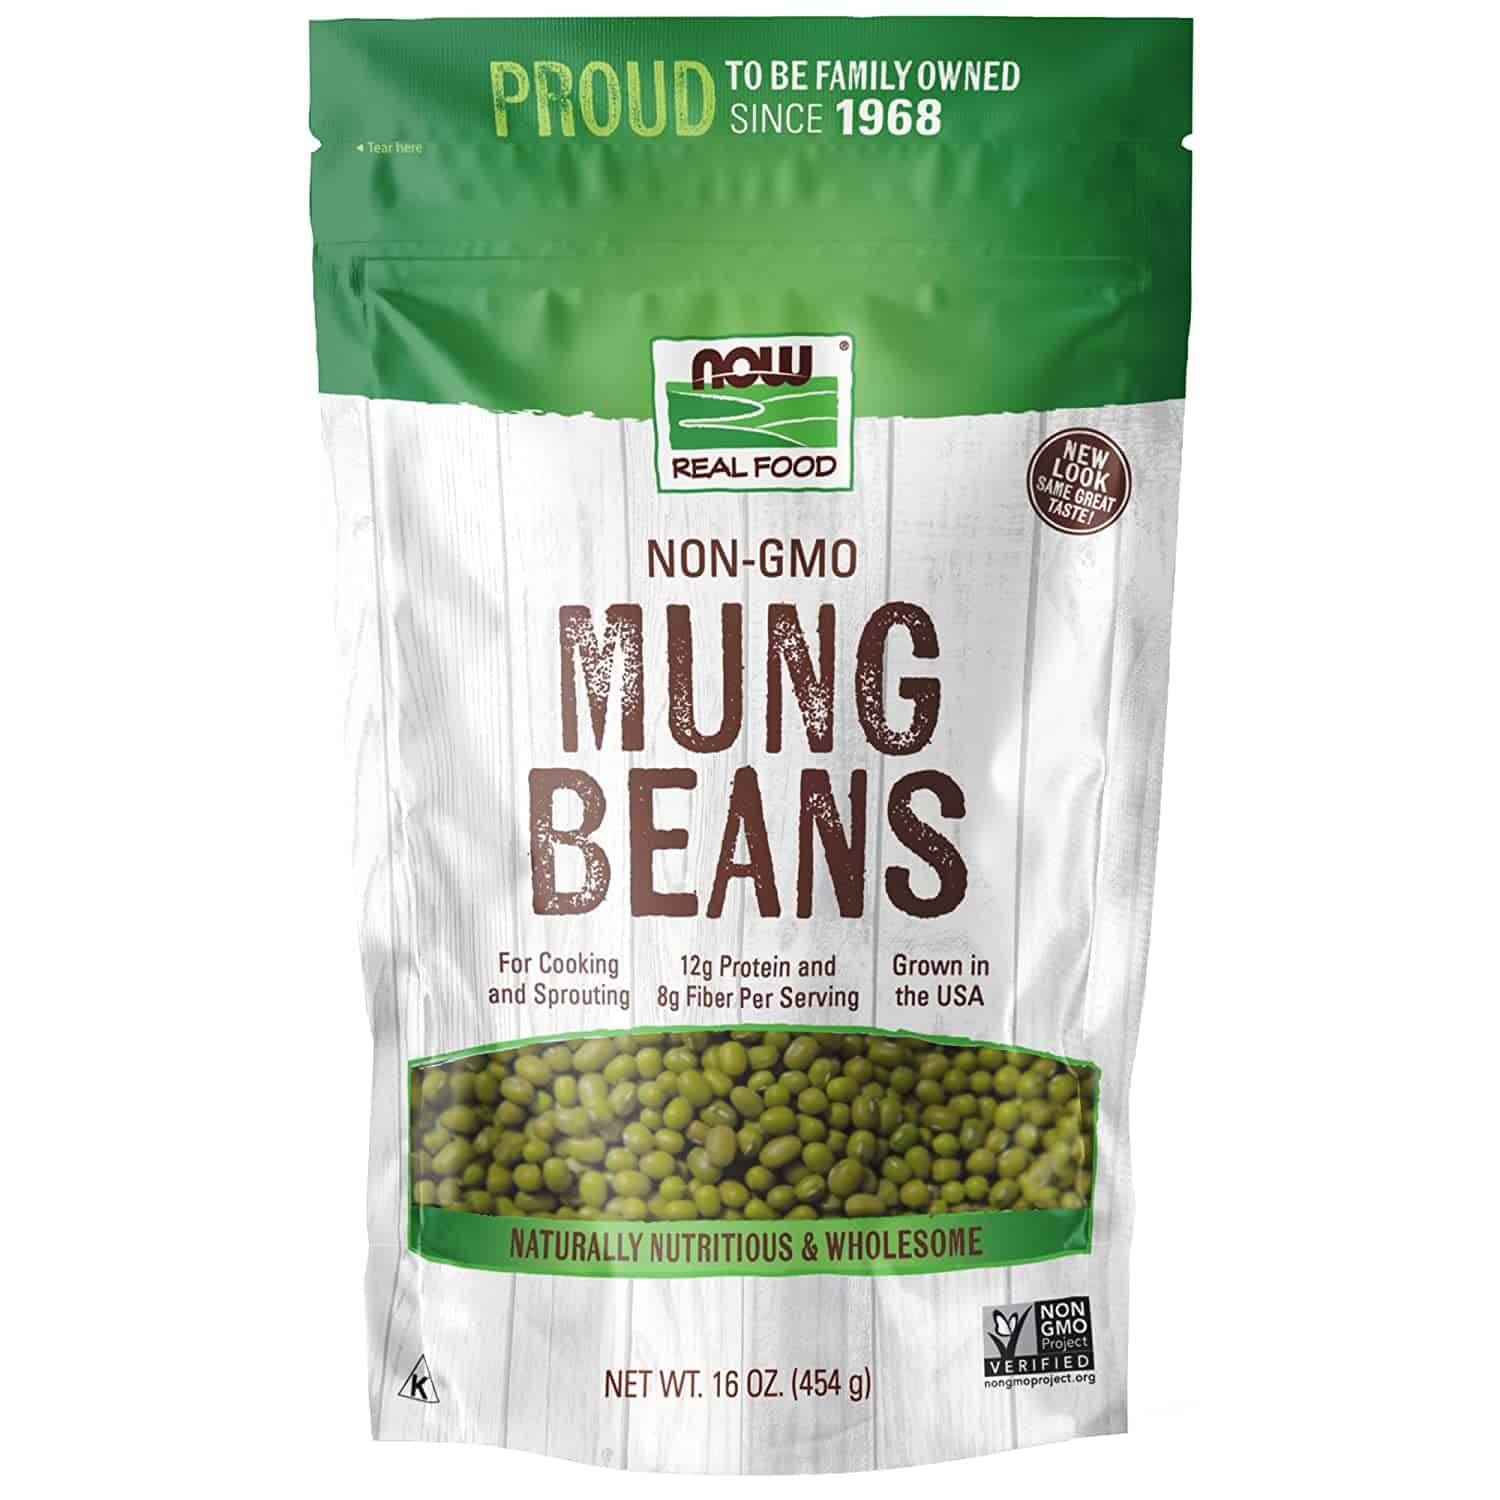 Melhor feijão mungo para brotar: NOW Foods Non-GMO Mungo Beans